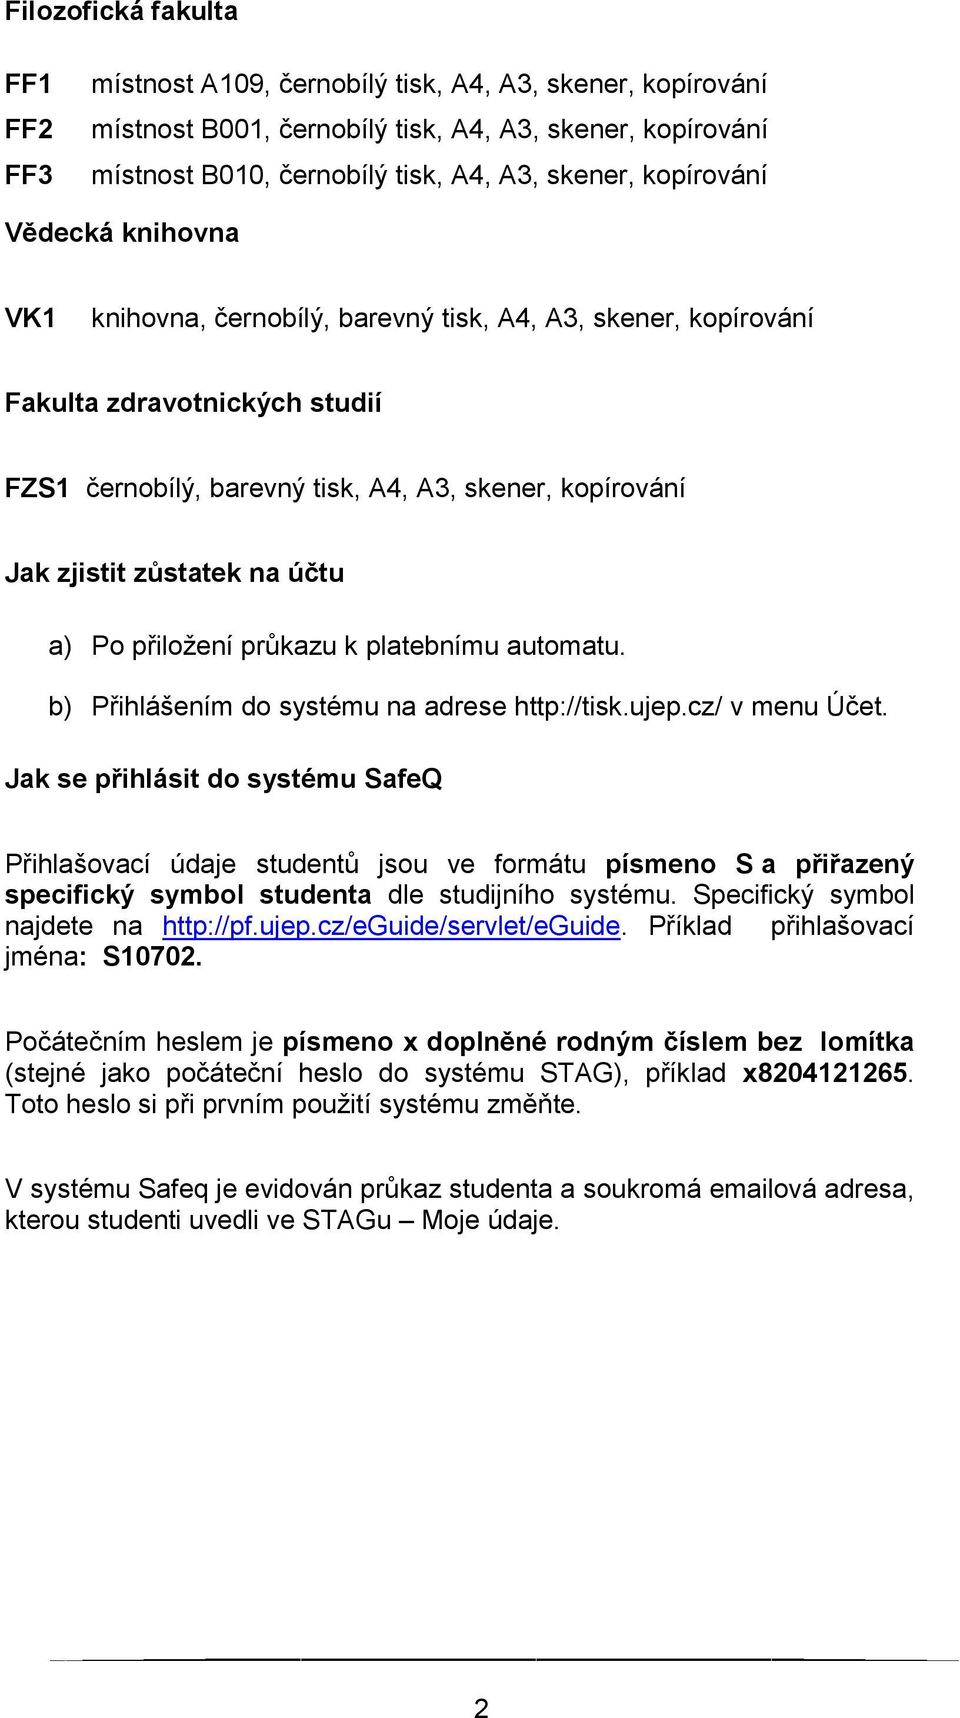 zůstatek na účtu a) Po přiložení průkazu k platebnímu automatu. b) Přihlášením do systému na adrese http://tisk.ujep.cz/ v menu Účet.